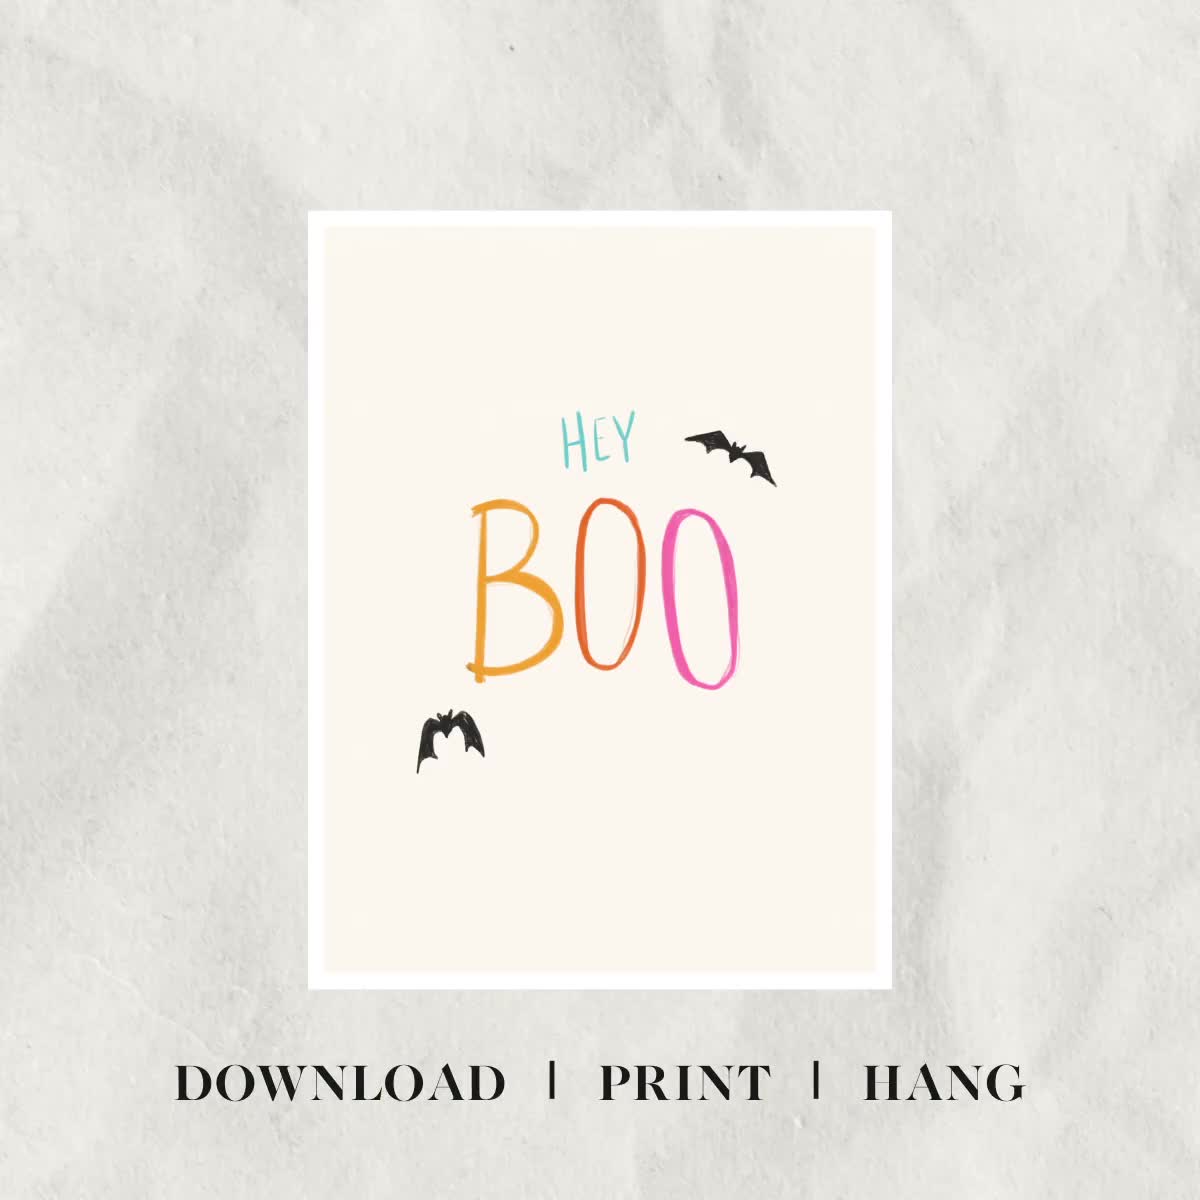 Halloween ' Hey Boo' Printed Bat Shape Décor